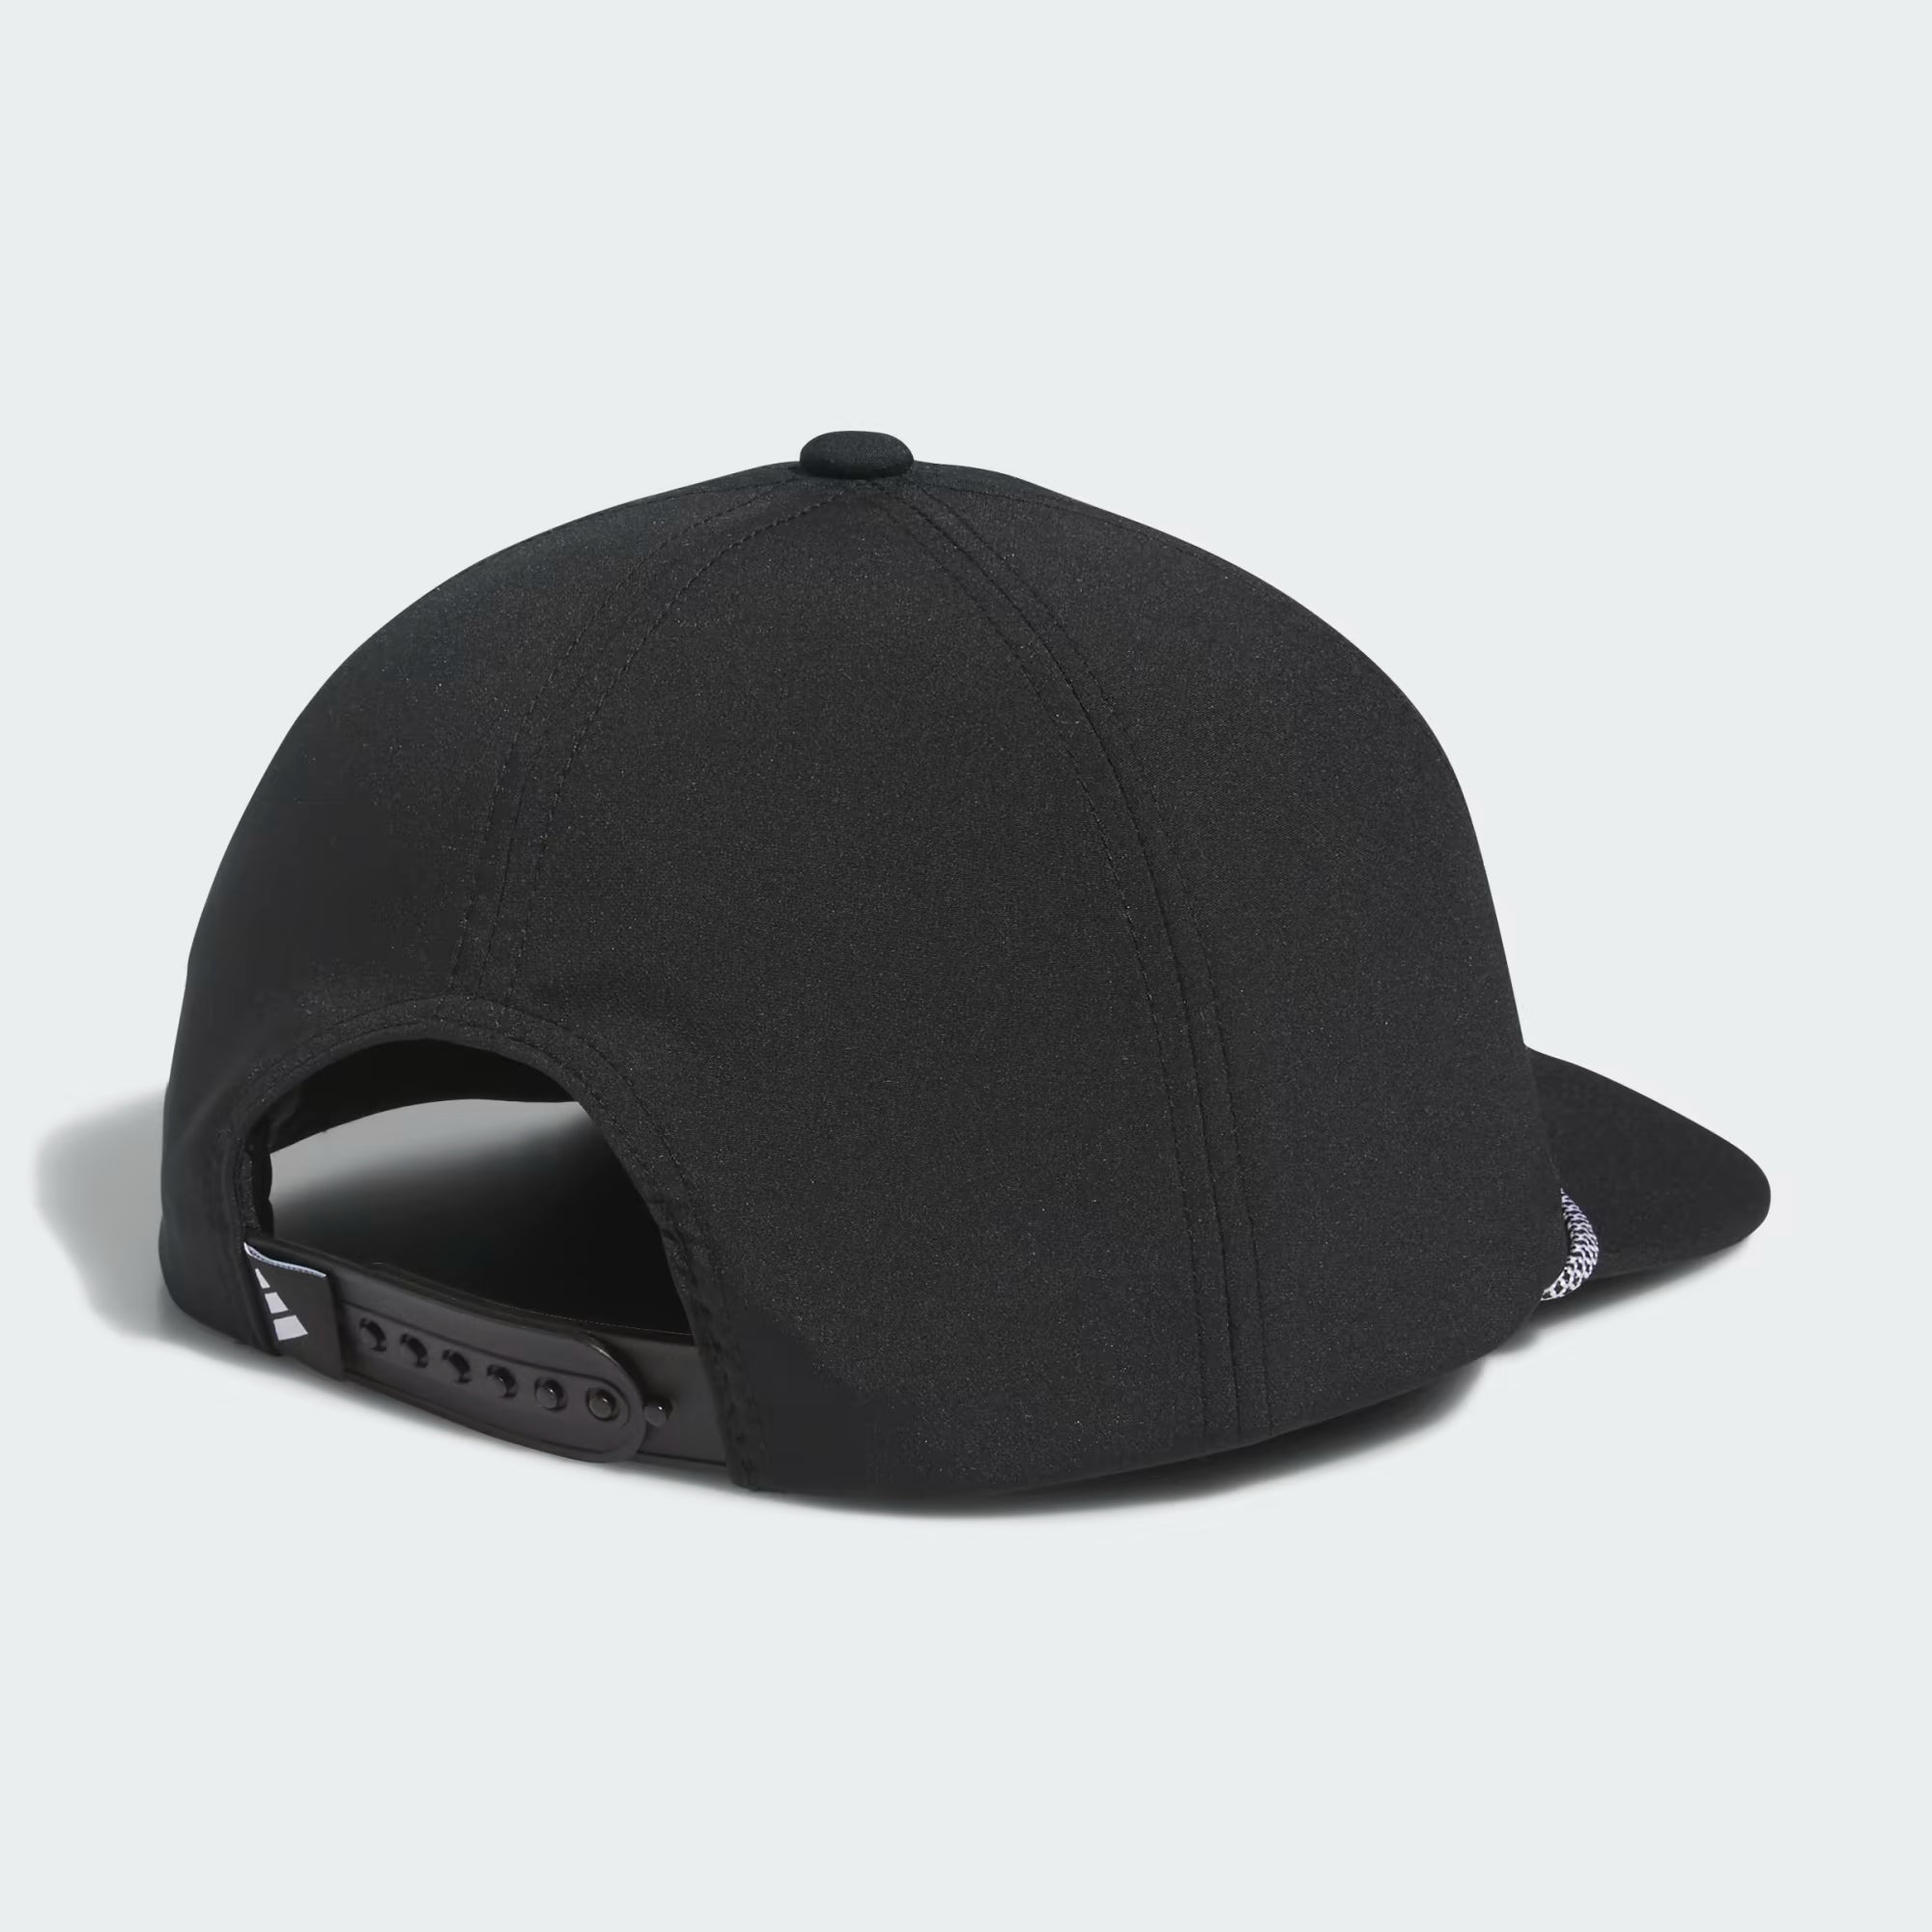 Adidas Retro Fivepanel Hat - Men